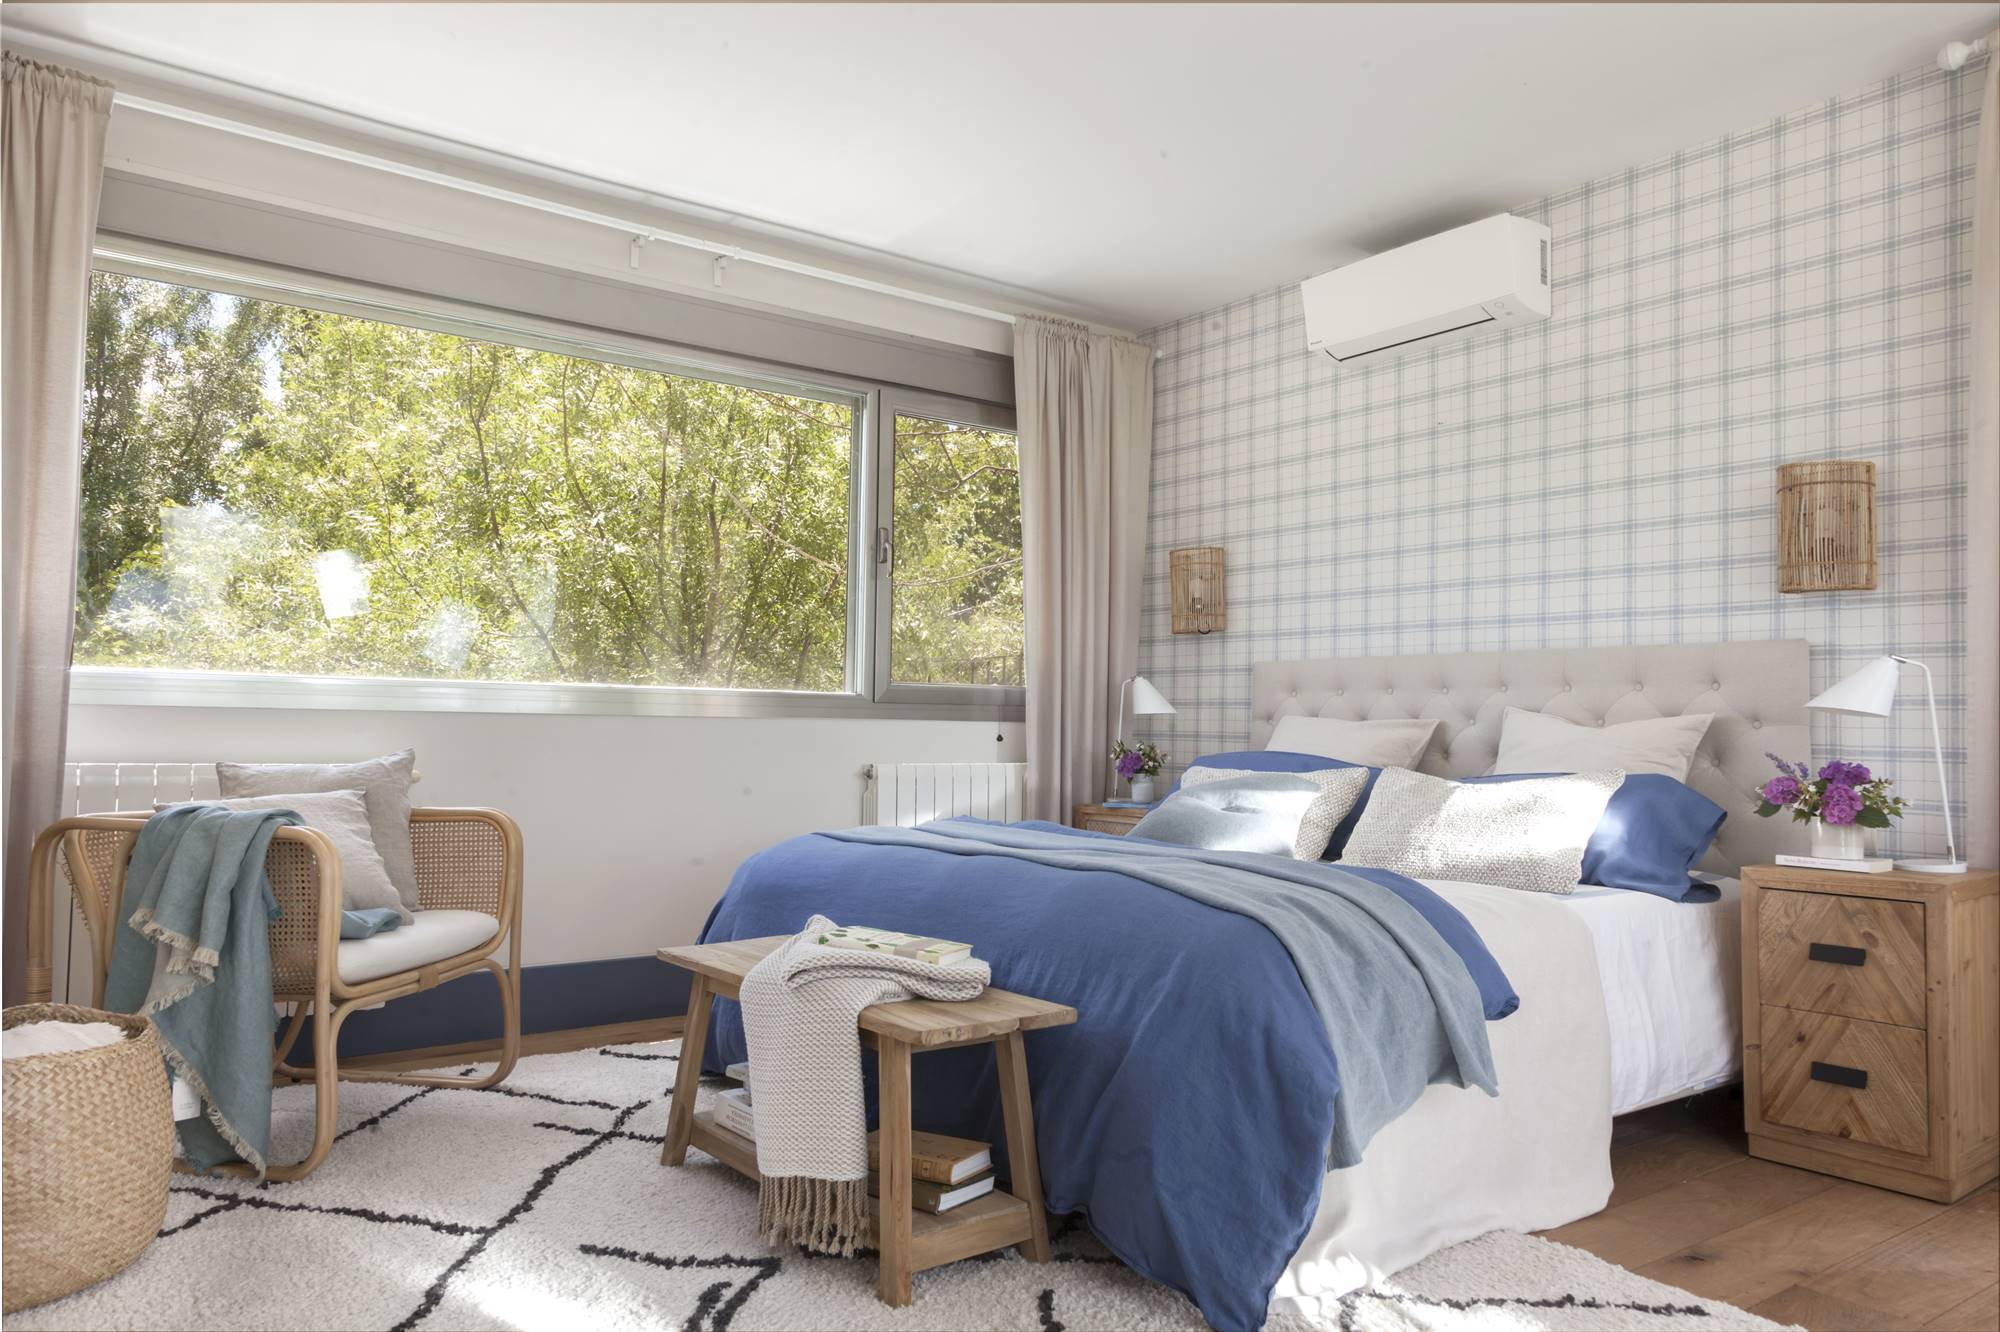 Dormitorio con papel pintado, zócalo azul y aire acondicionado.